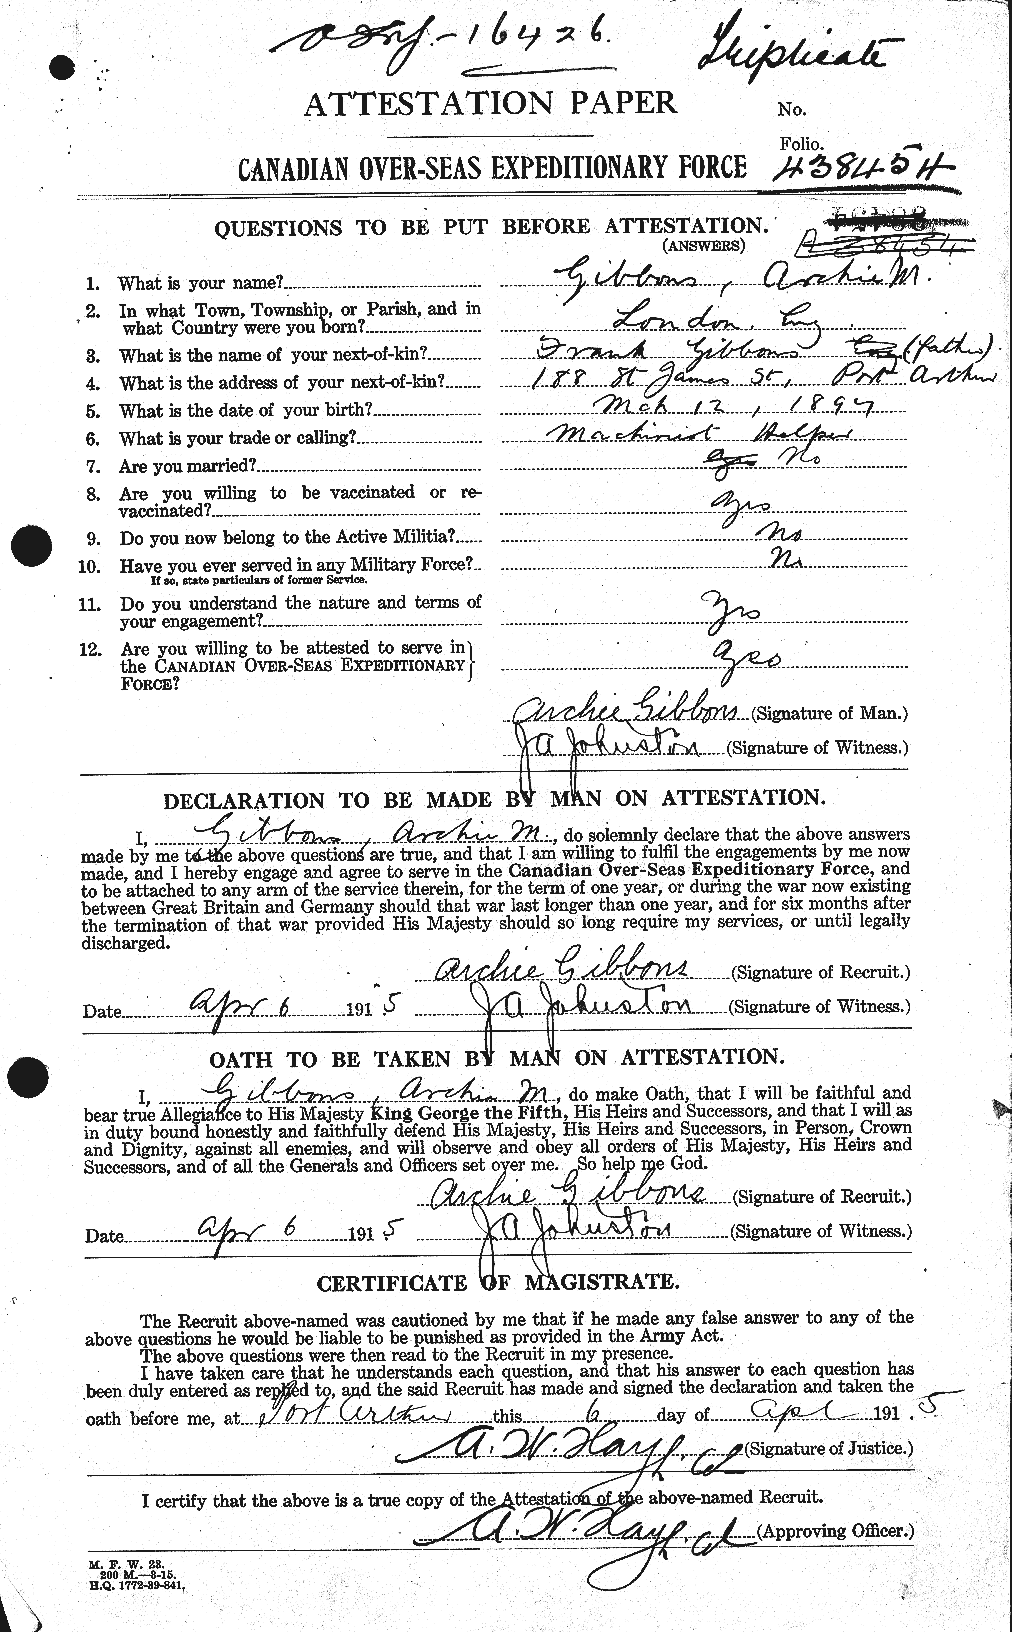 Dossiers du Personnel de la Première Guerre mondiale - CEC 347961a